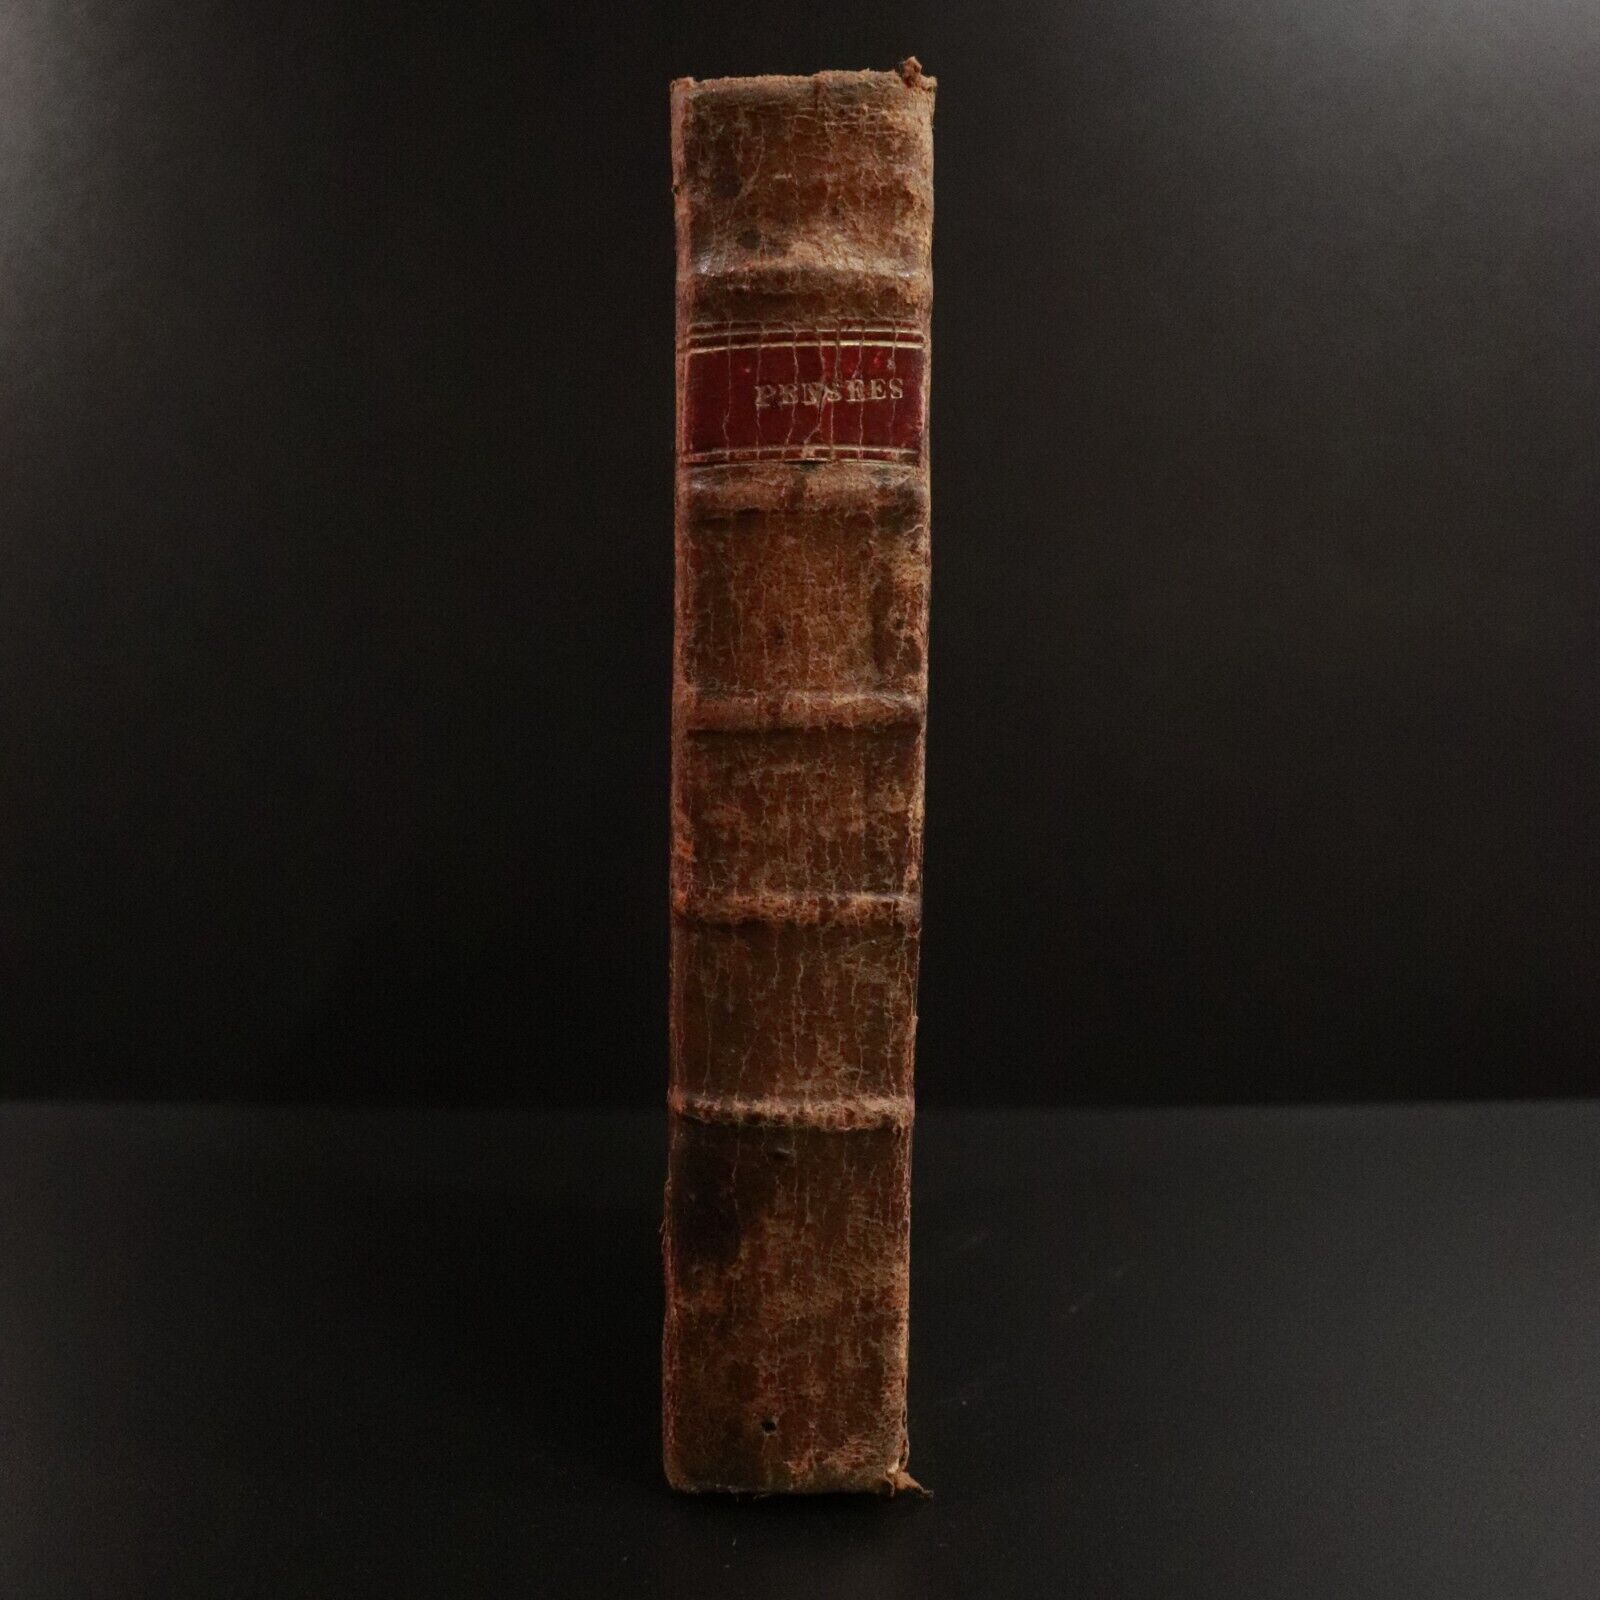 1832 Pensees sur Les Plus Importantes Verites De La Religion Antiquarian Book - 0